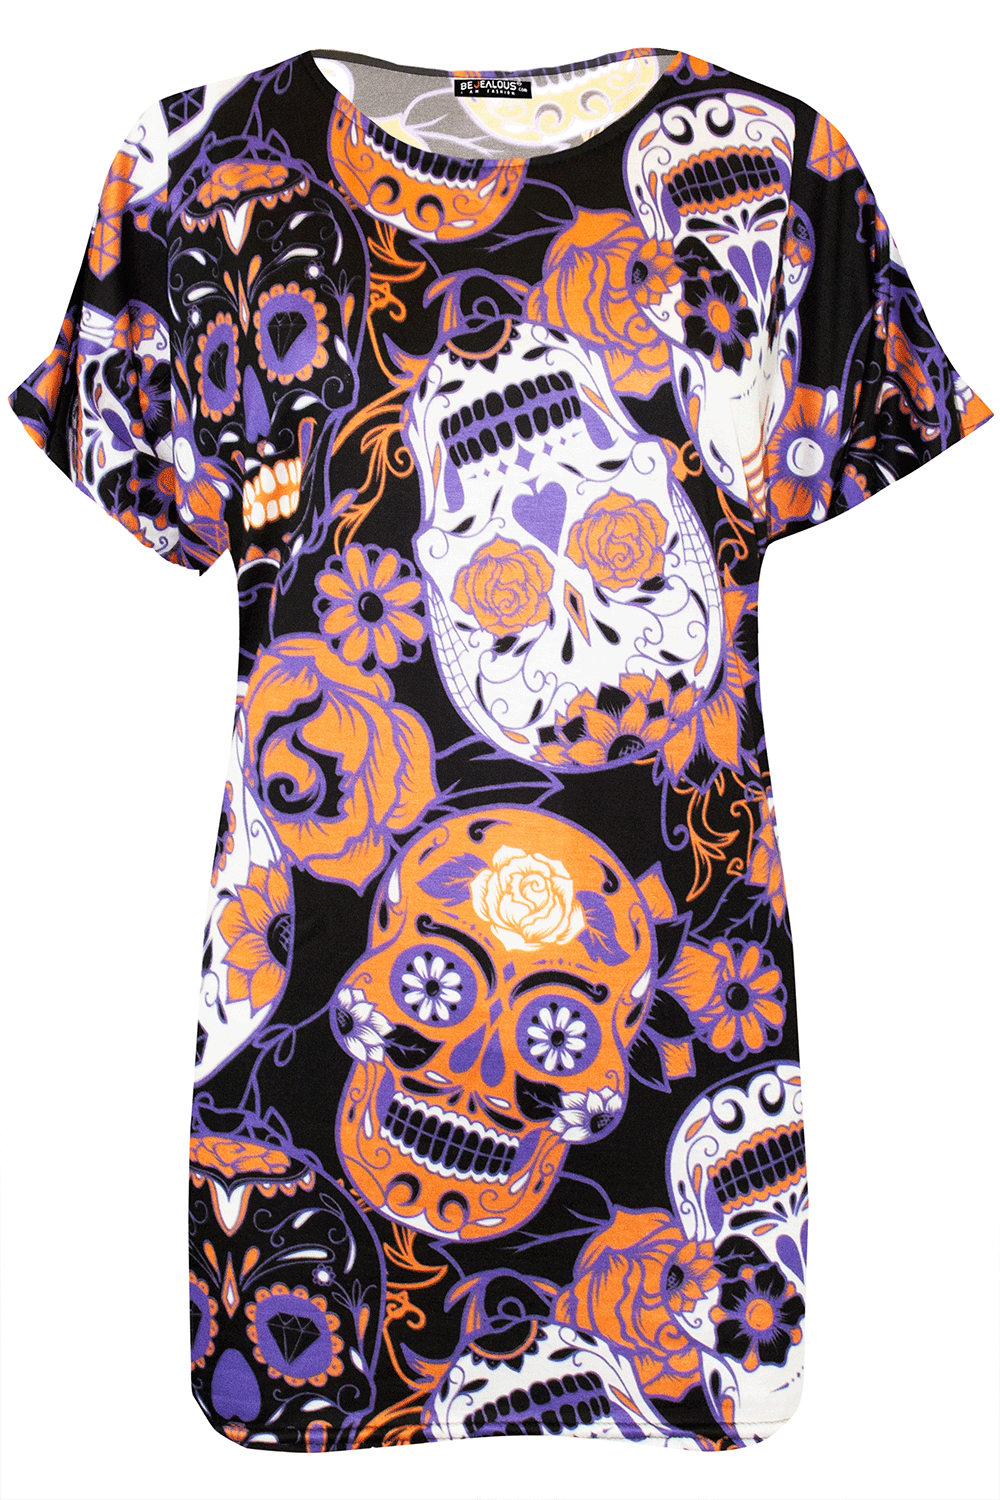 Sarah Halloween Scary Skull Face T Shirt Top